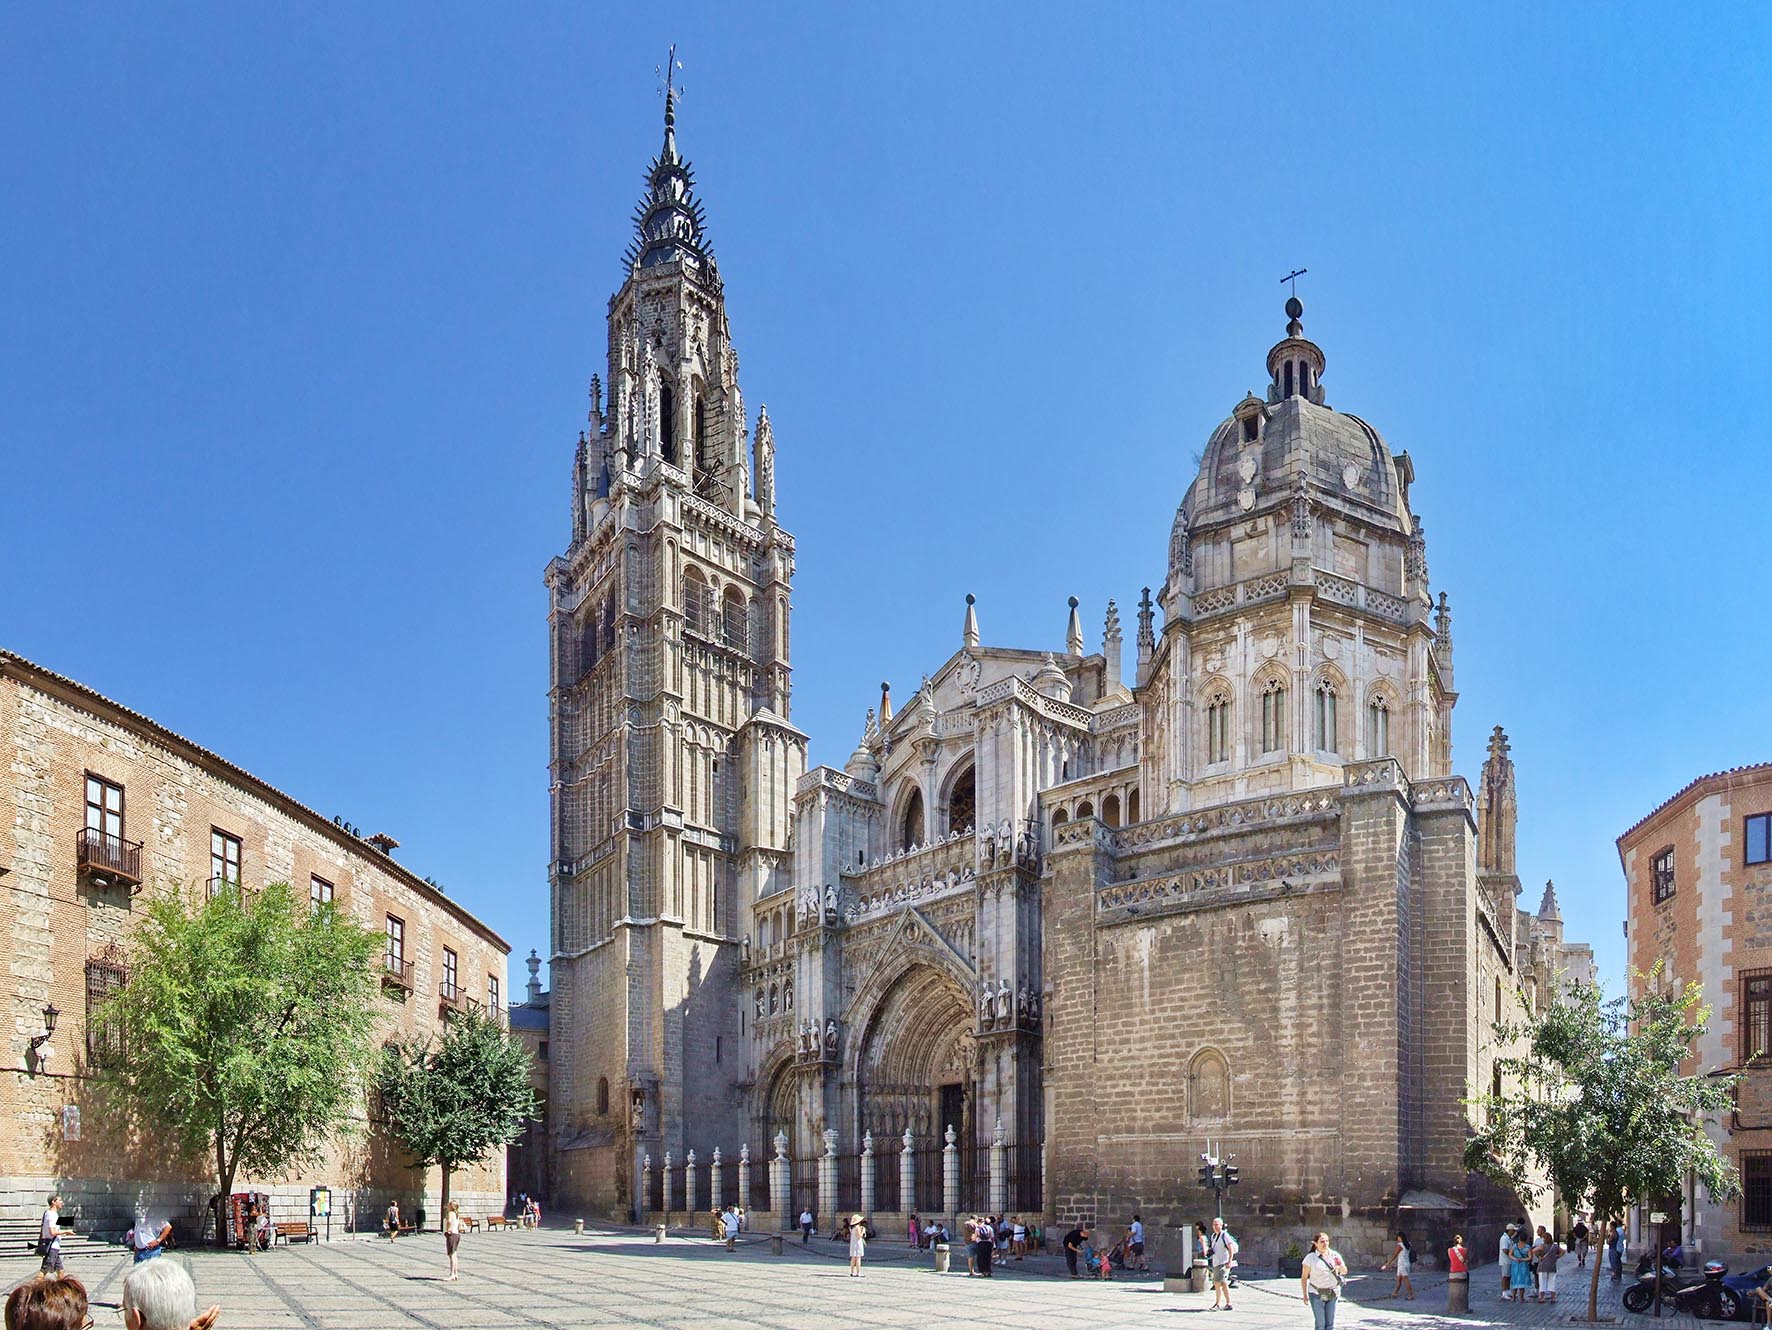 Curso guías de turismo en Toledo | UMA formación, tutoriales GRATIS y cursos online